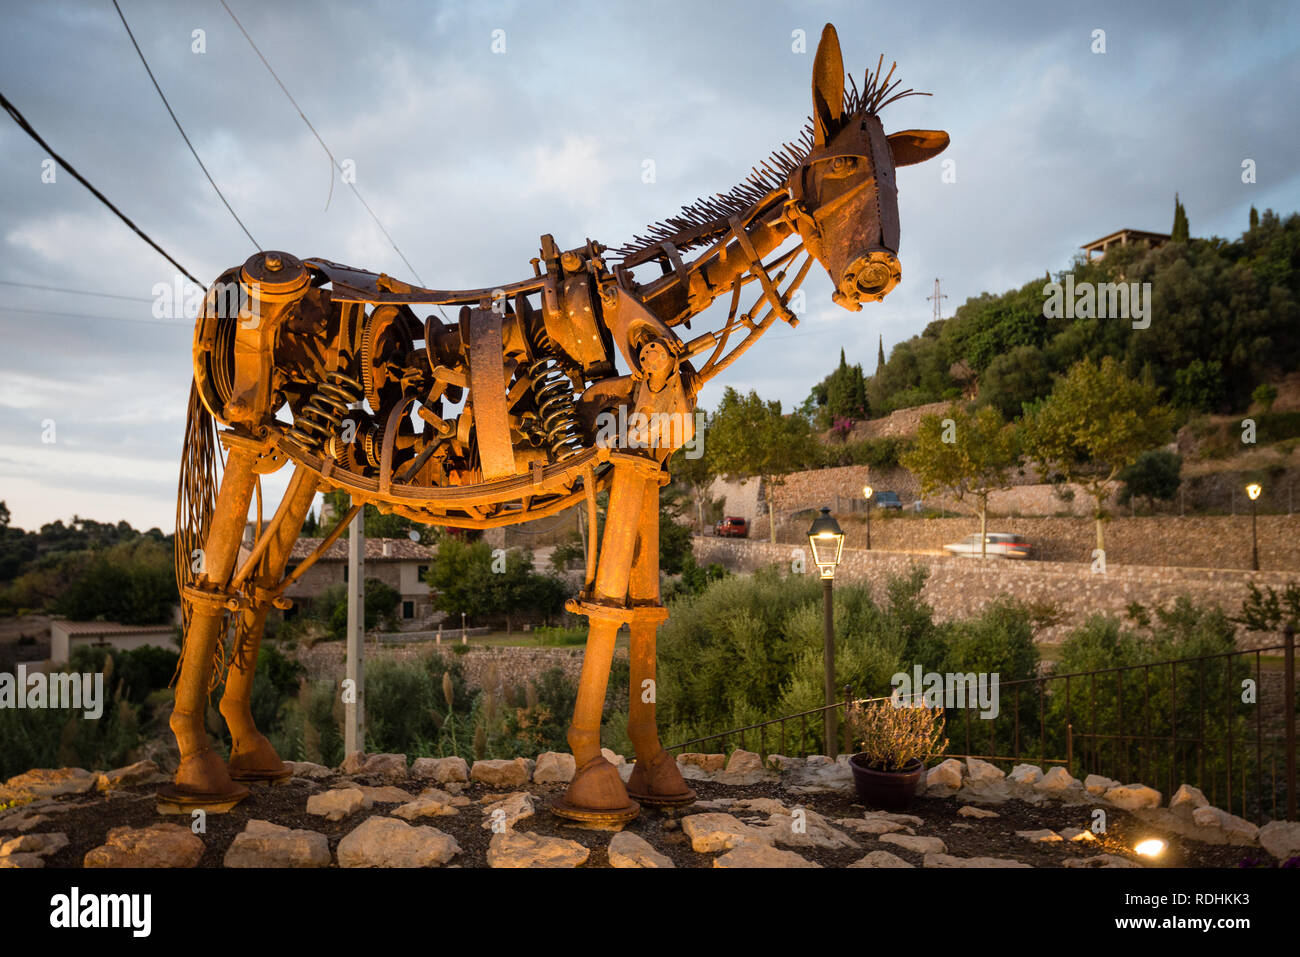 ESTELLENCS, ESPAGNE - Oct 5, 2018 : scrap metal sculpture arts - une figure d'un cheval fabriqué à partir de déchets dans le village de Zuheros, l'île de Majorque, Espagne Banque D'Images